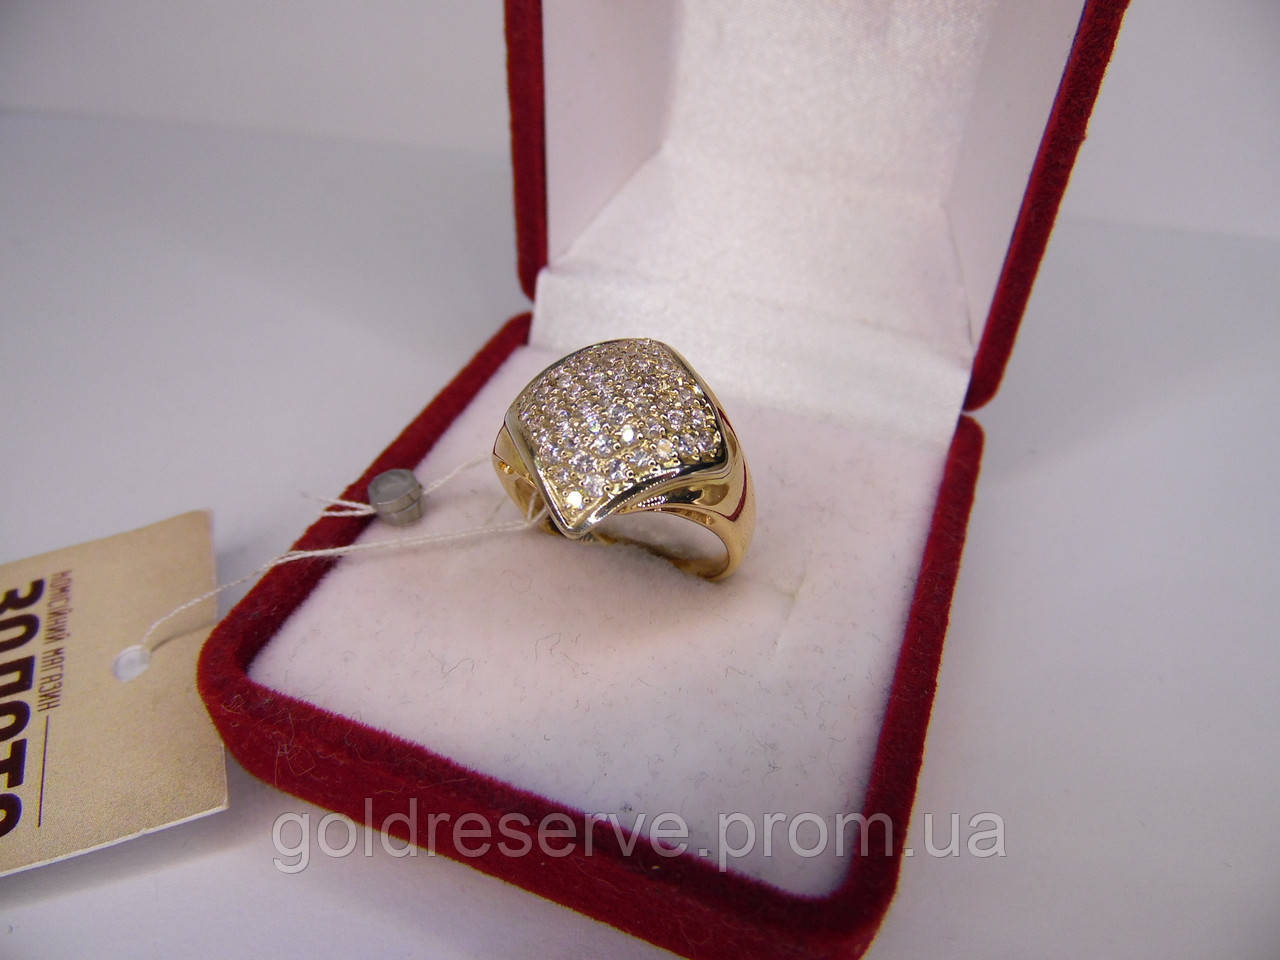 Золотое женское кольцо. Размер 16,9